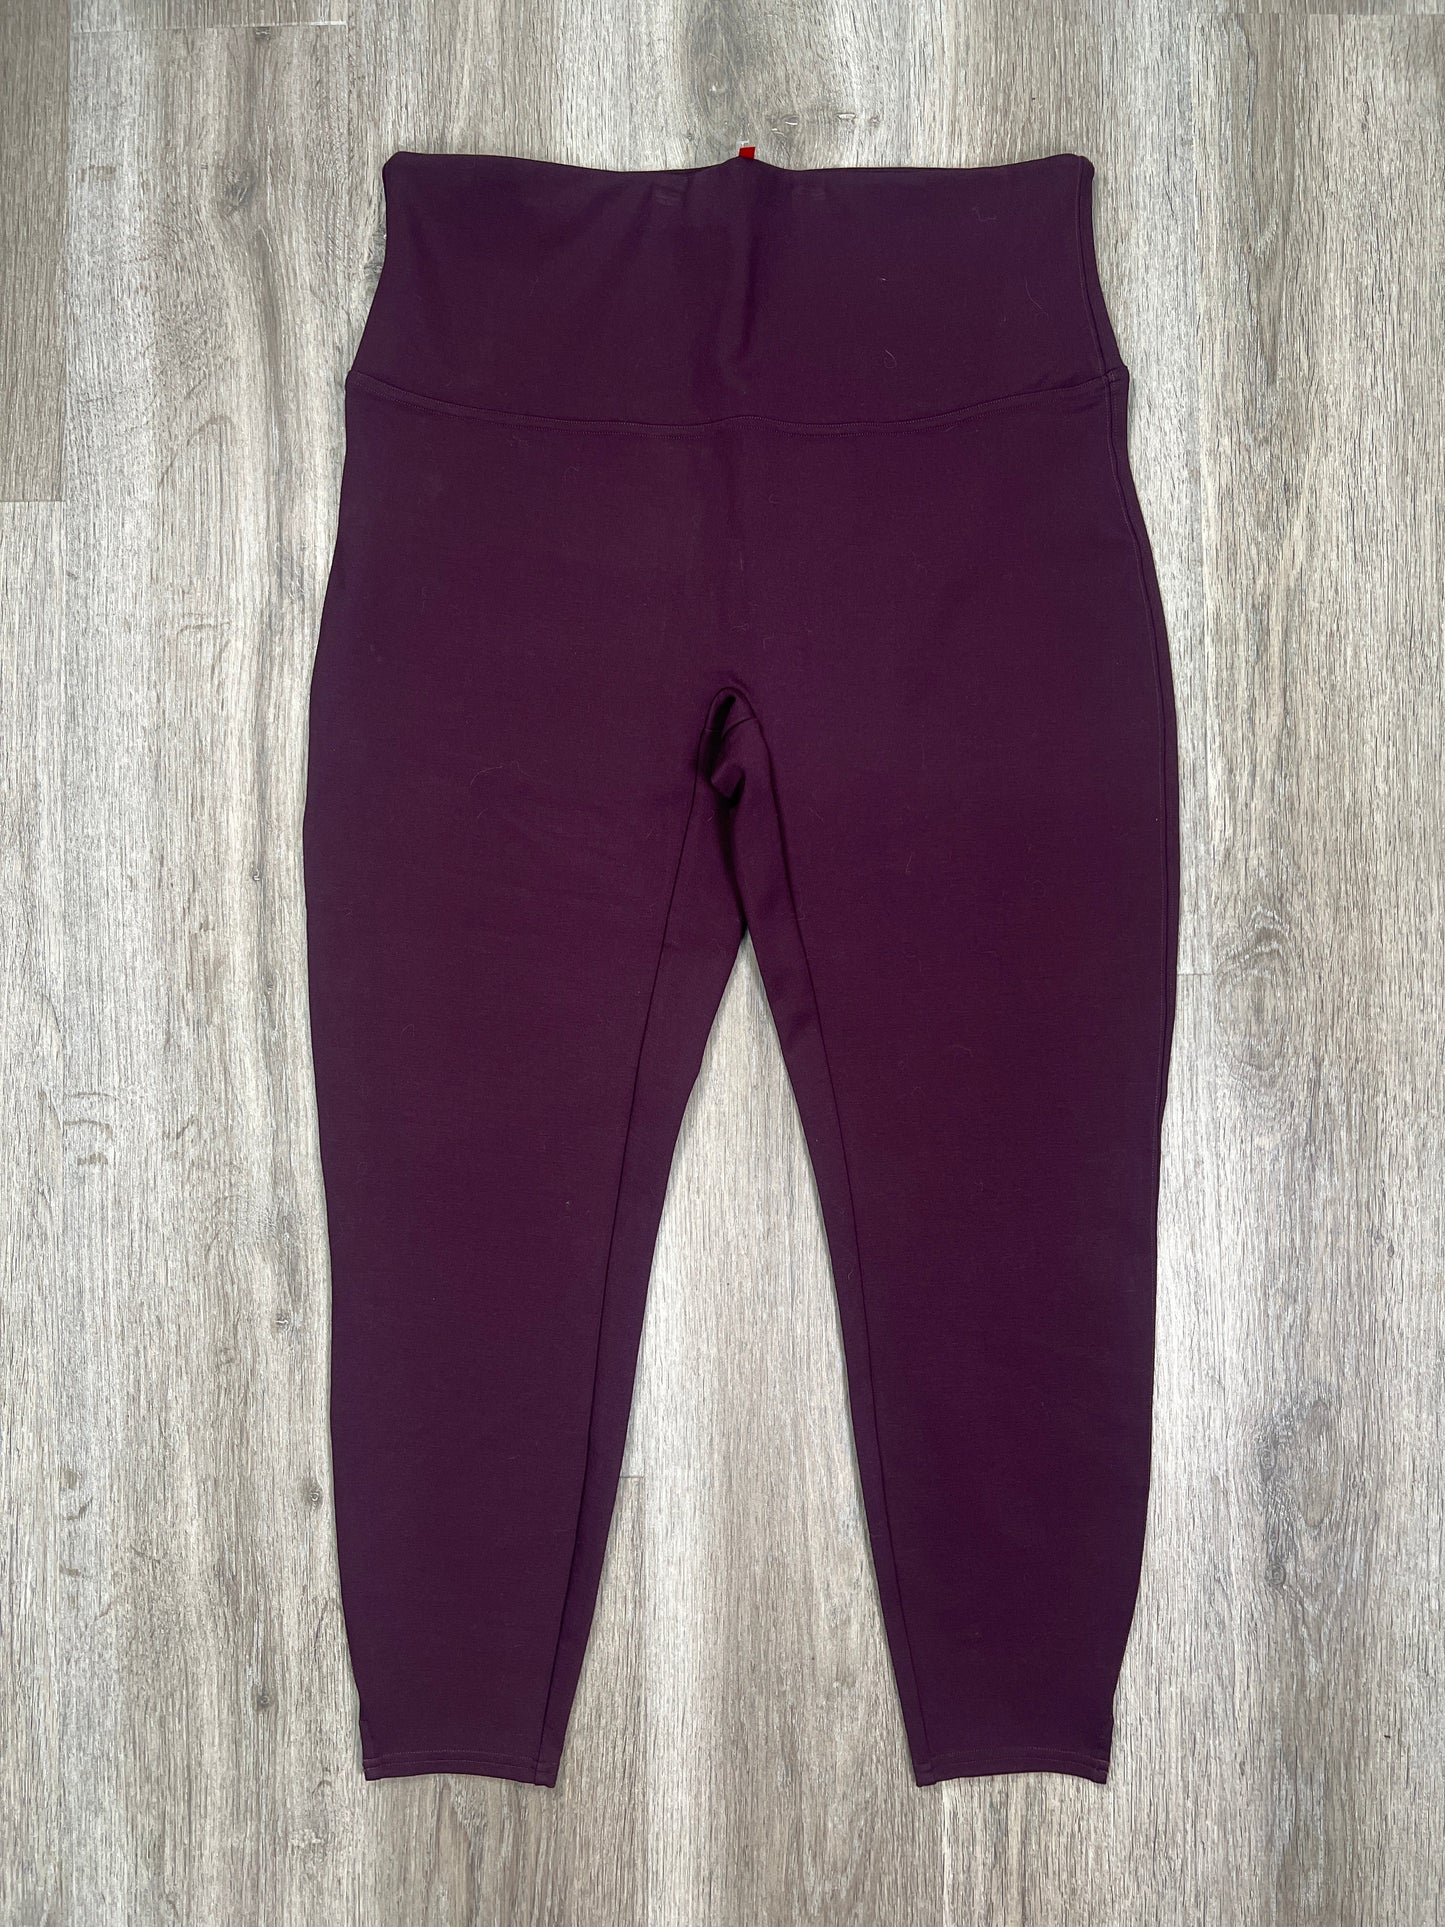 Purple Pants Leggings Spanx, Size 2x